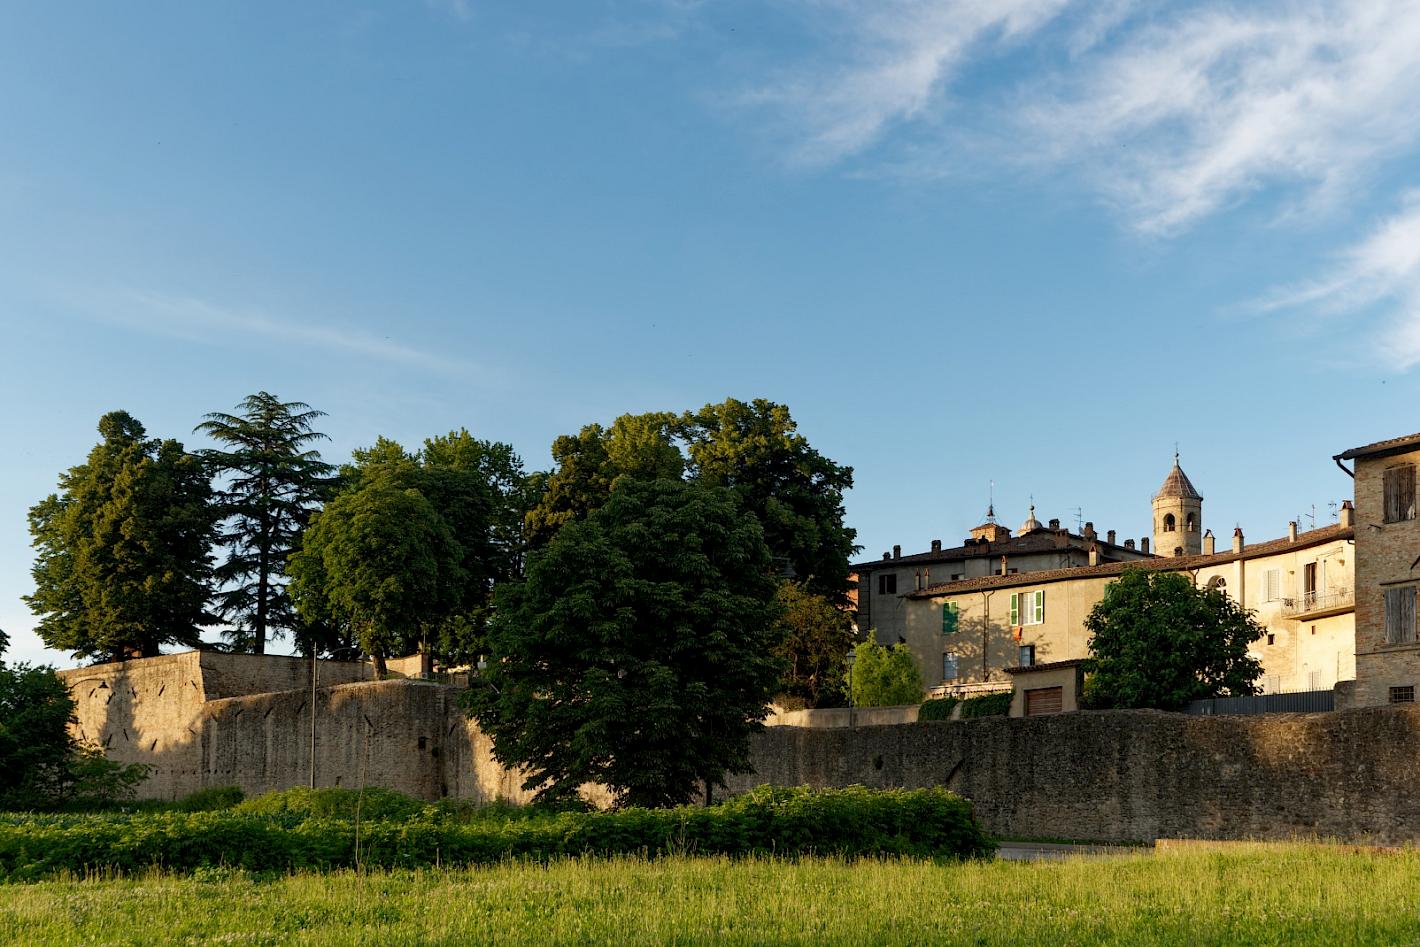 The rich architectural heritage of Citta Di Castello